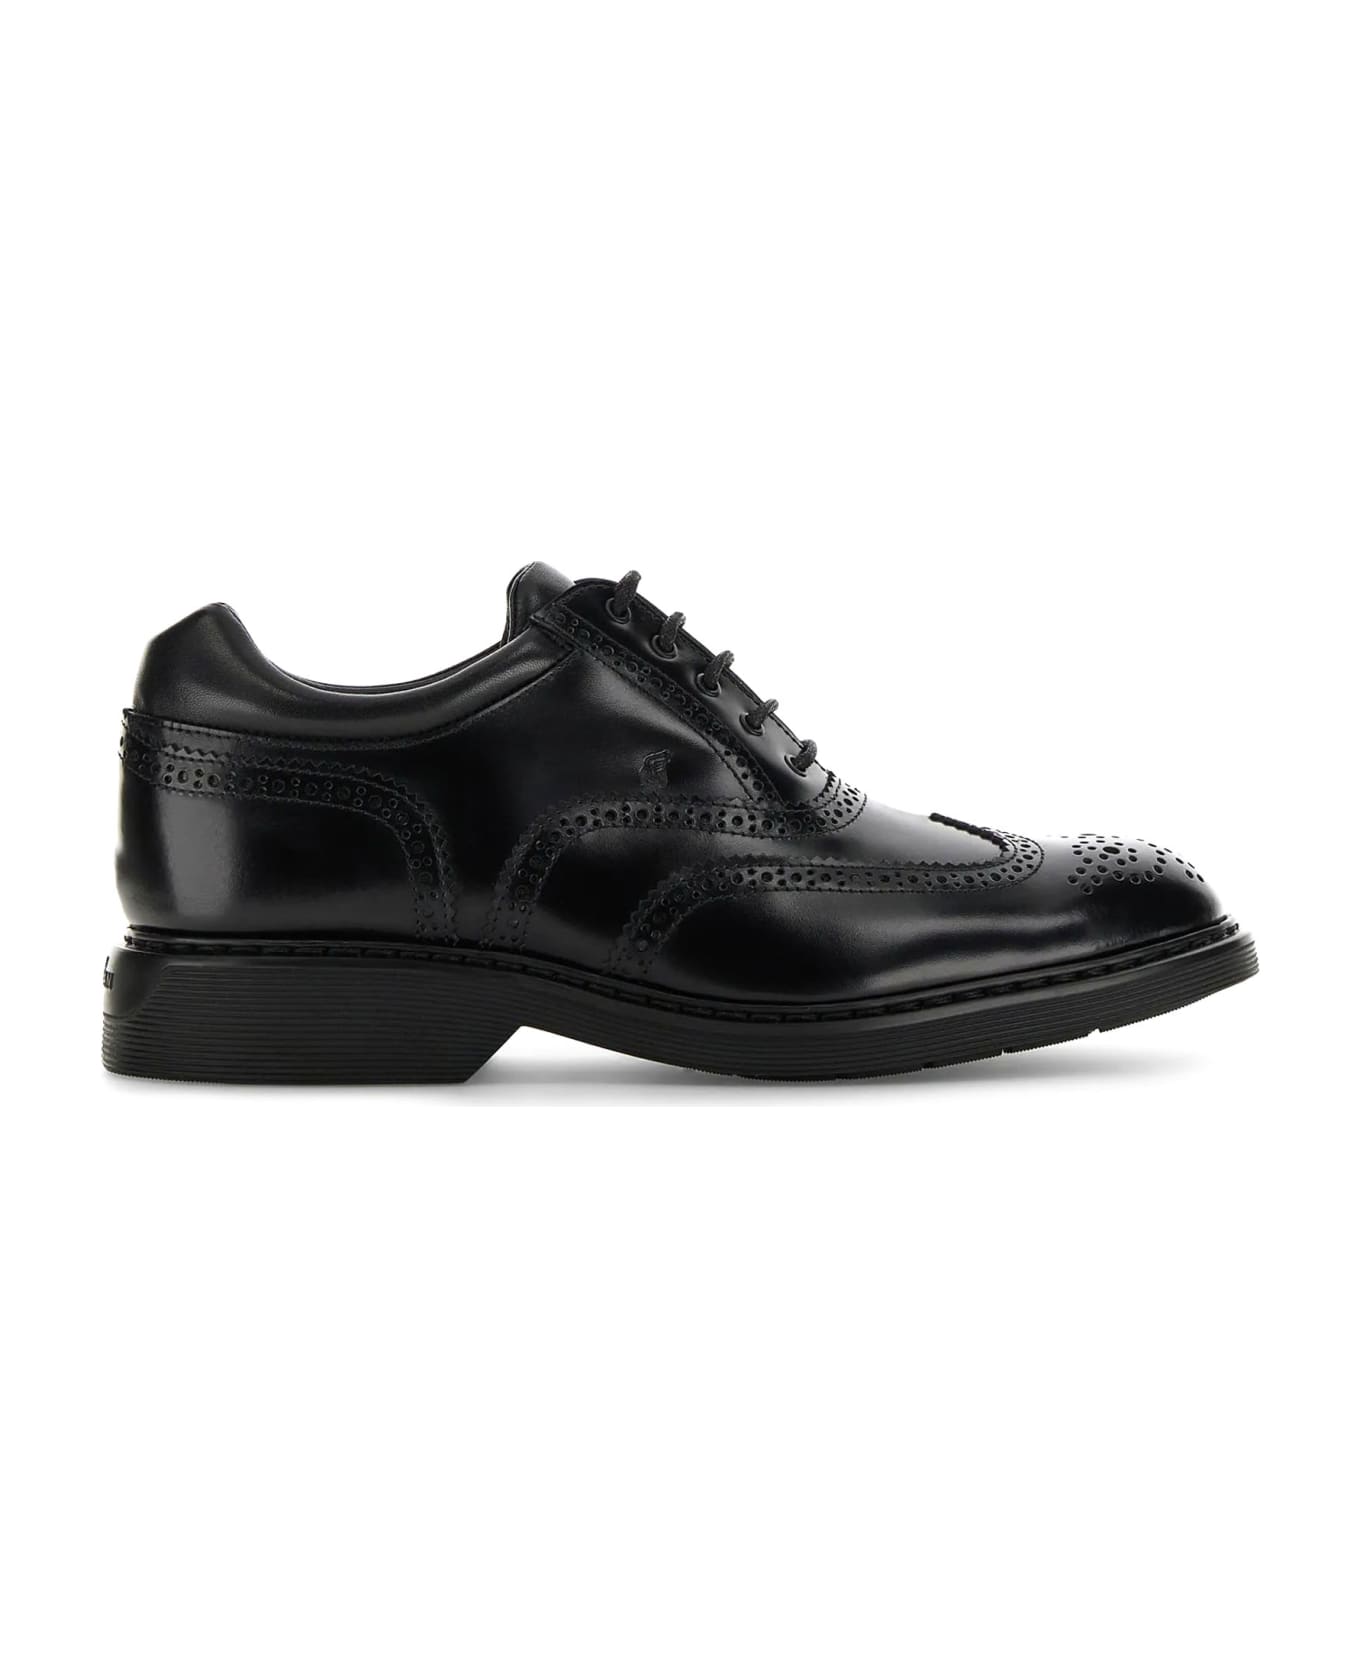 Hogan H576 Leather Lace-up Shoes - black